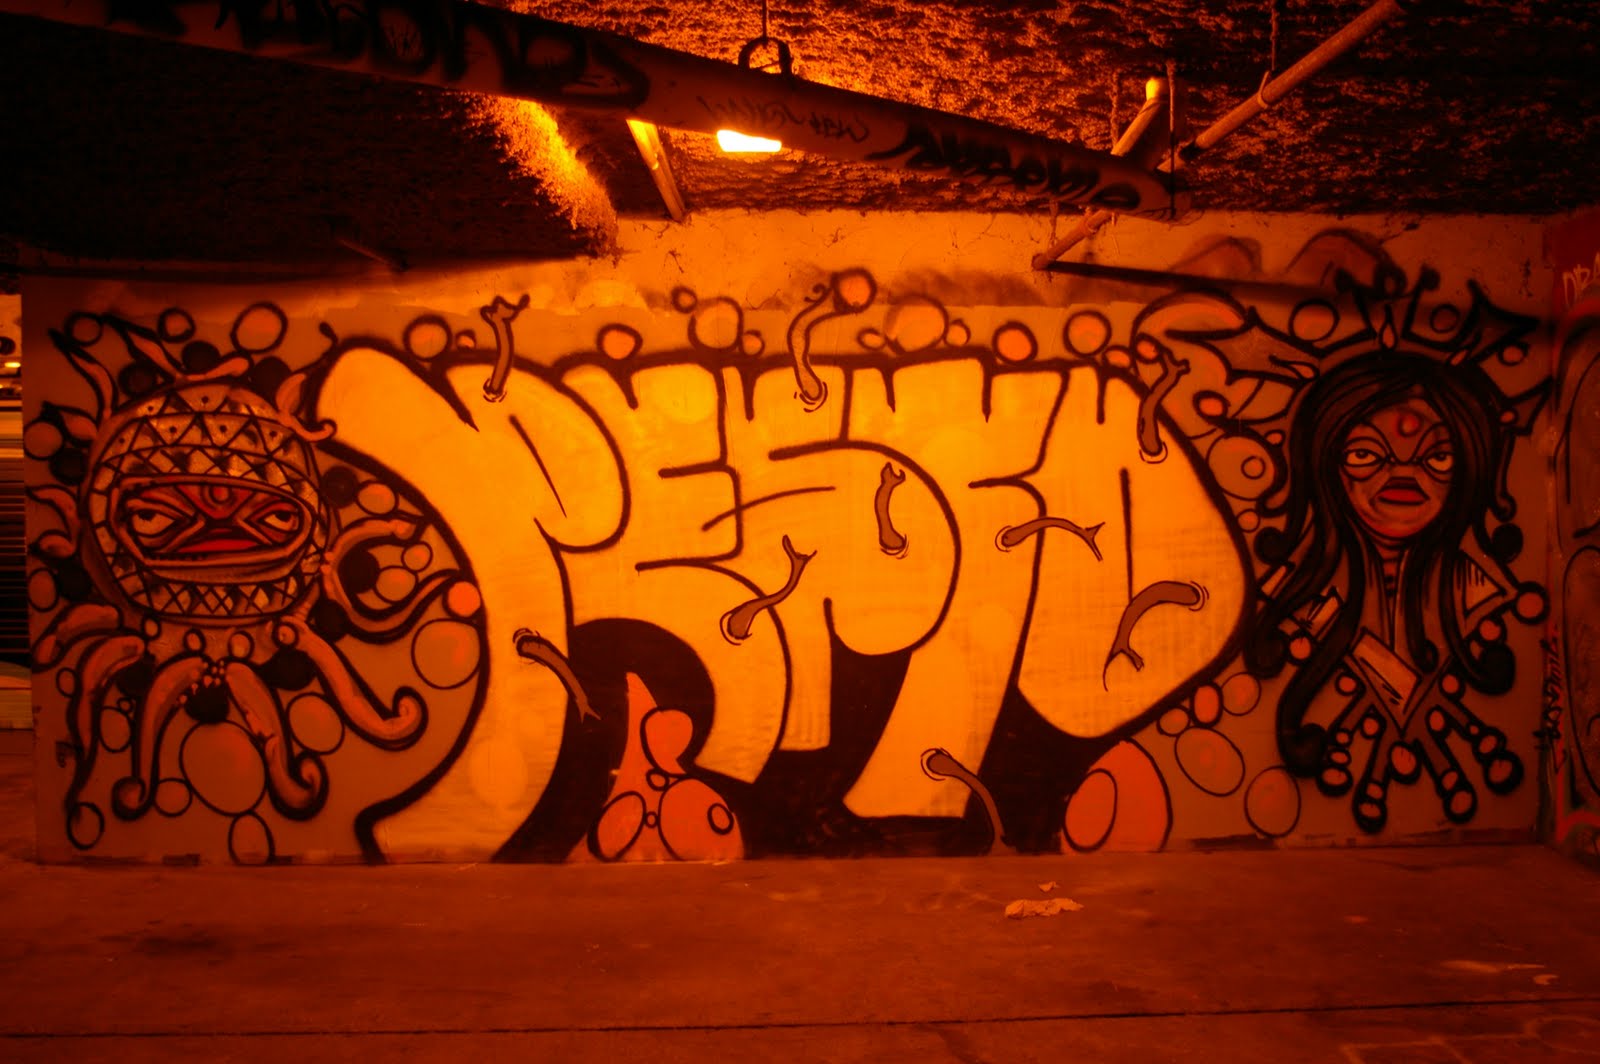 pesto graffiti